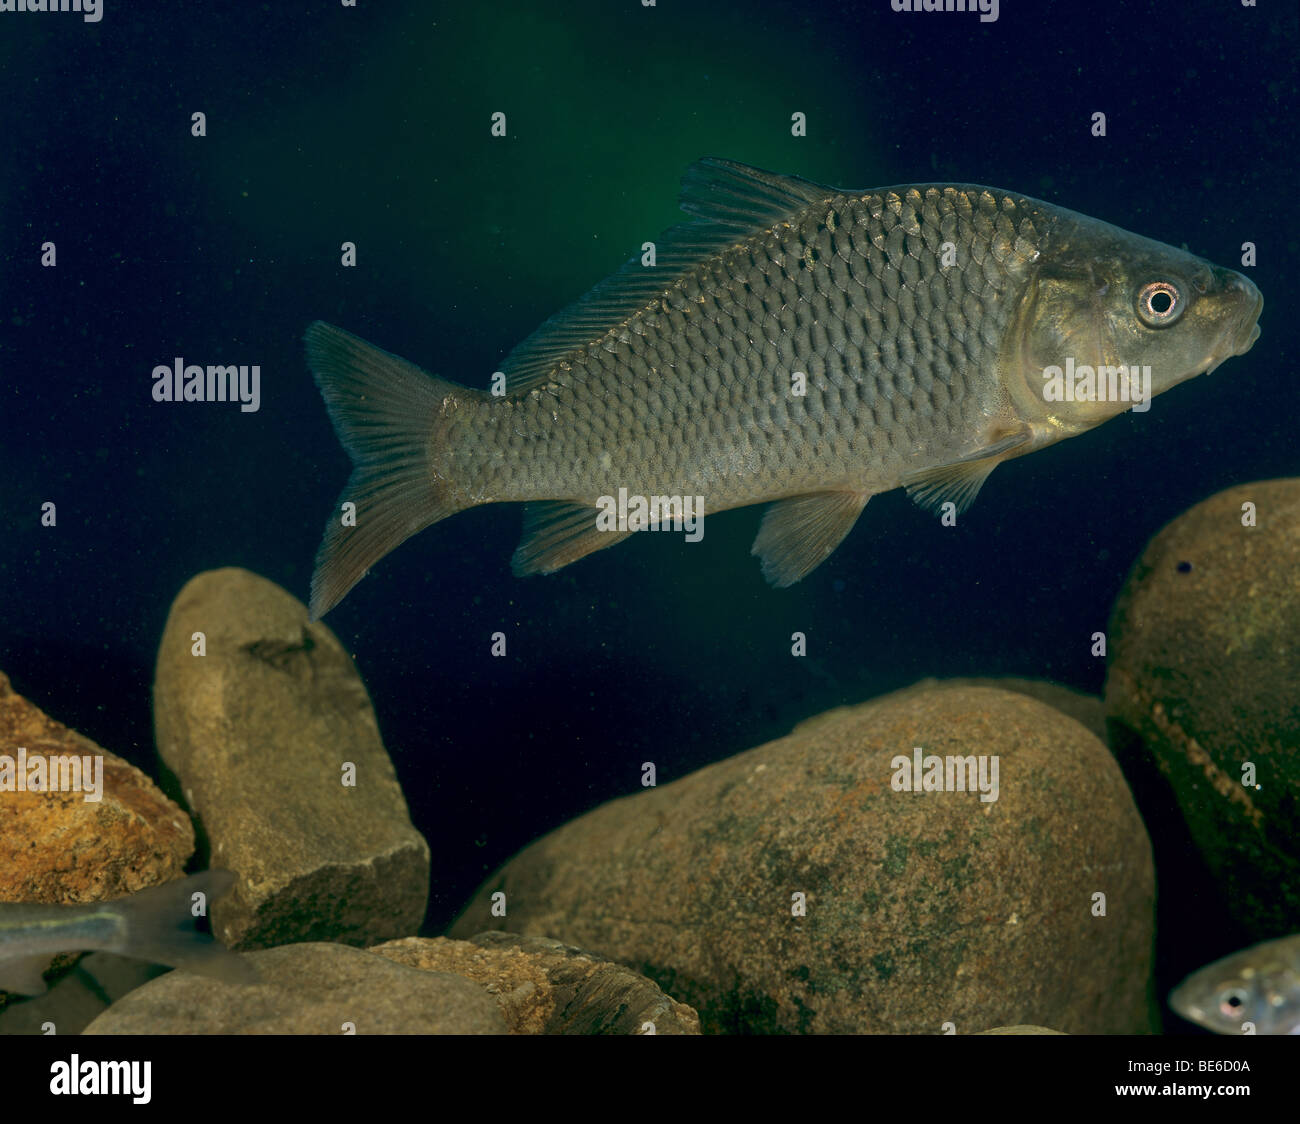 Common carp / Cyprinus carpio Stock Photo